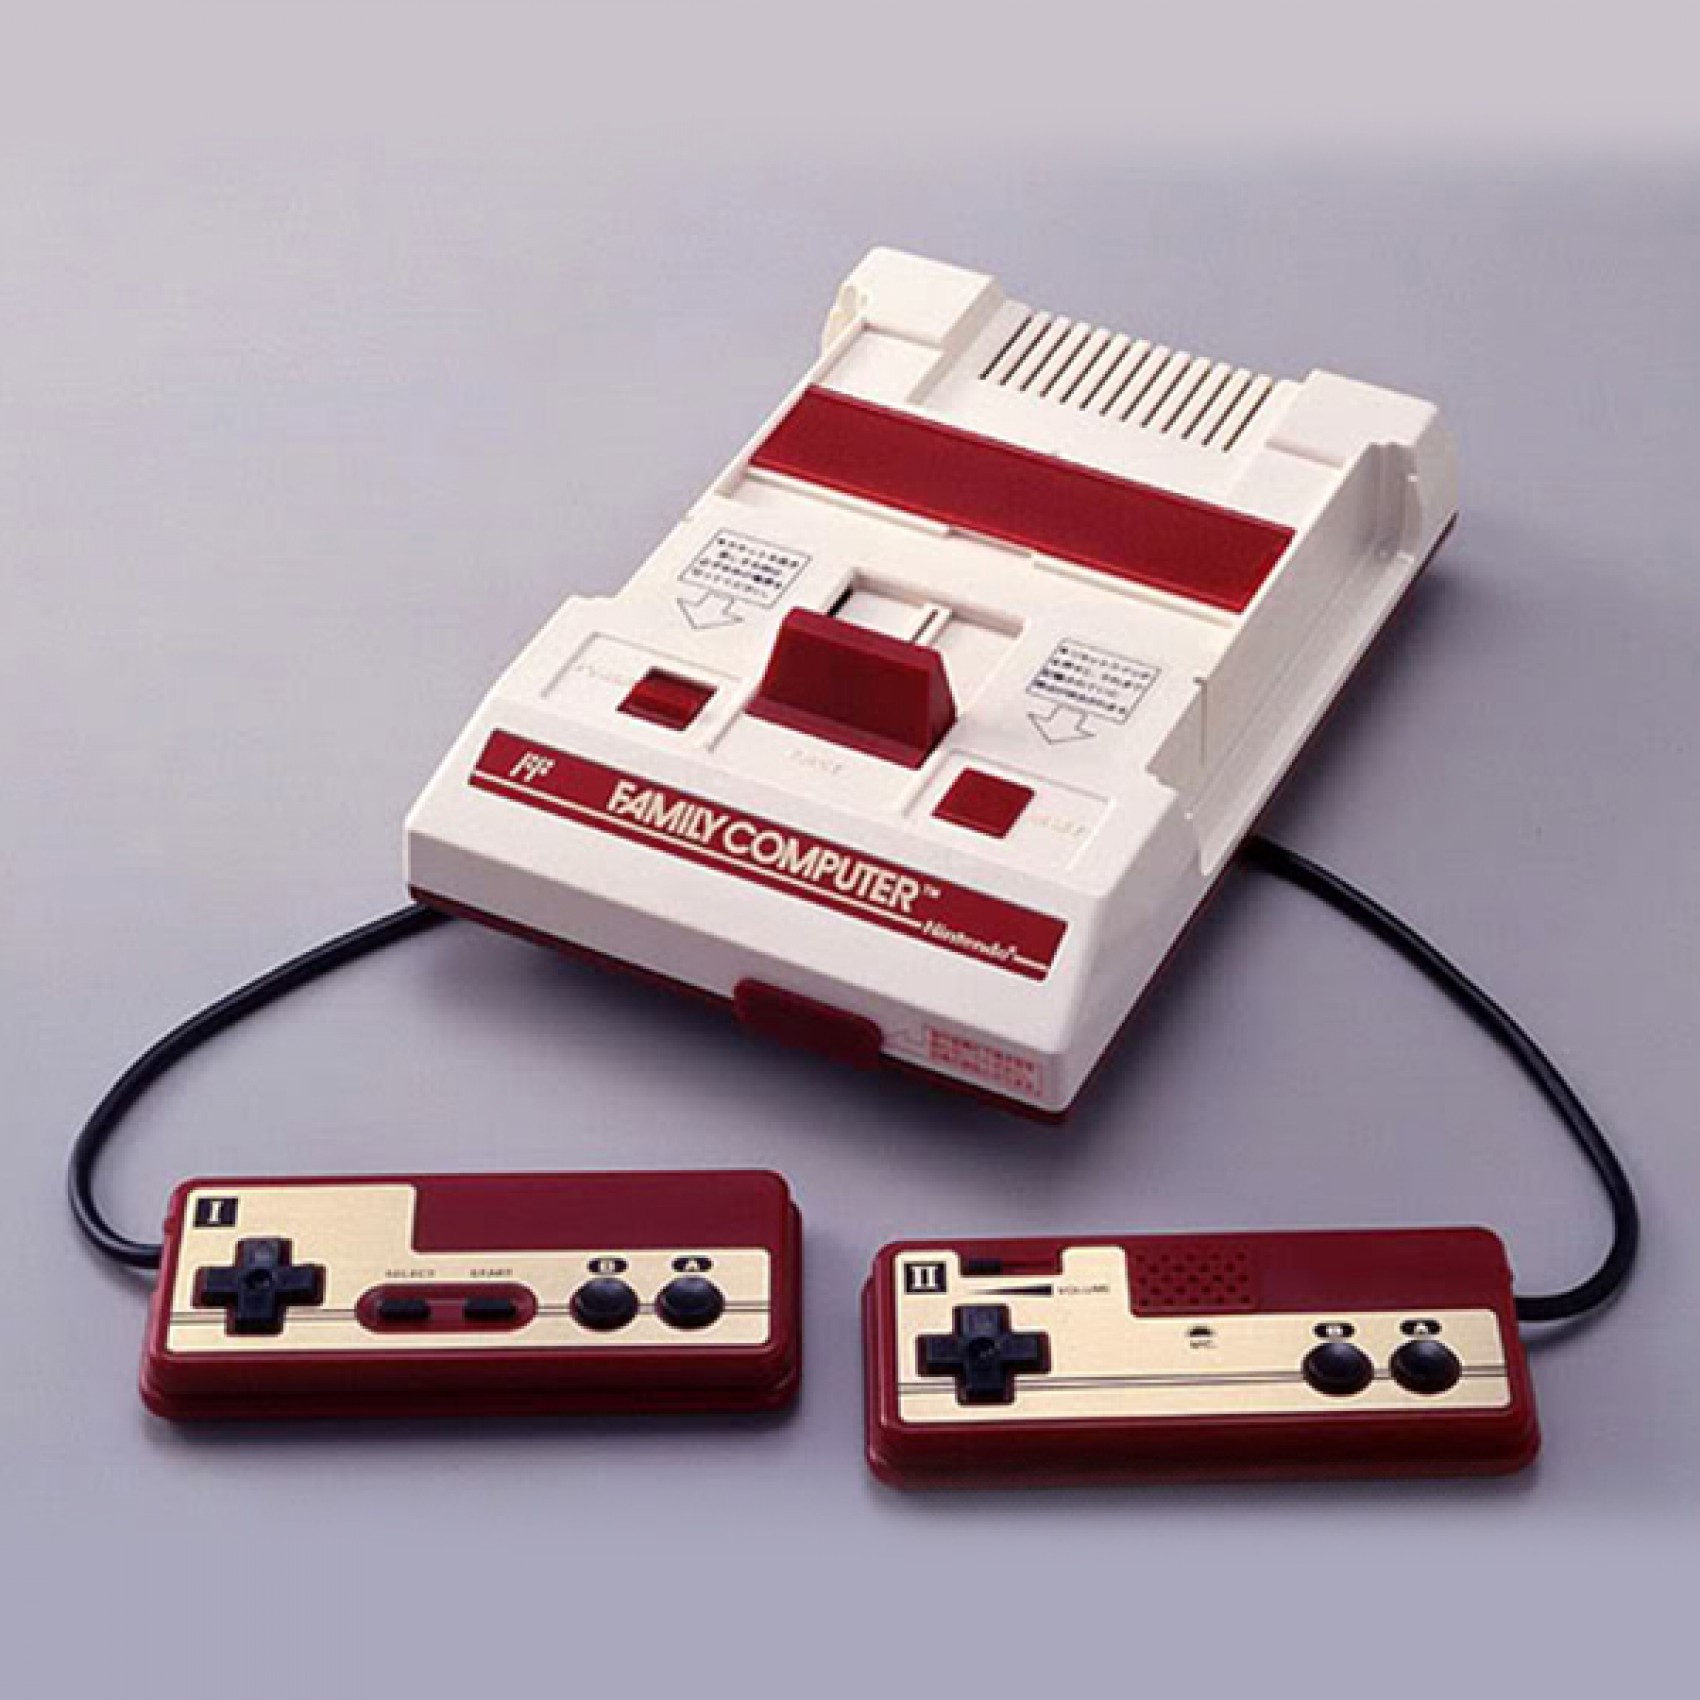 Nintendo компьютер. Приставка Денди Нинтендо. Приставка Нинтендо Фамиком. Приставки 1983 Нинтендо. Nintendo Famicom NES.